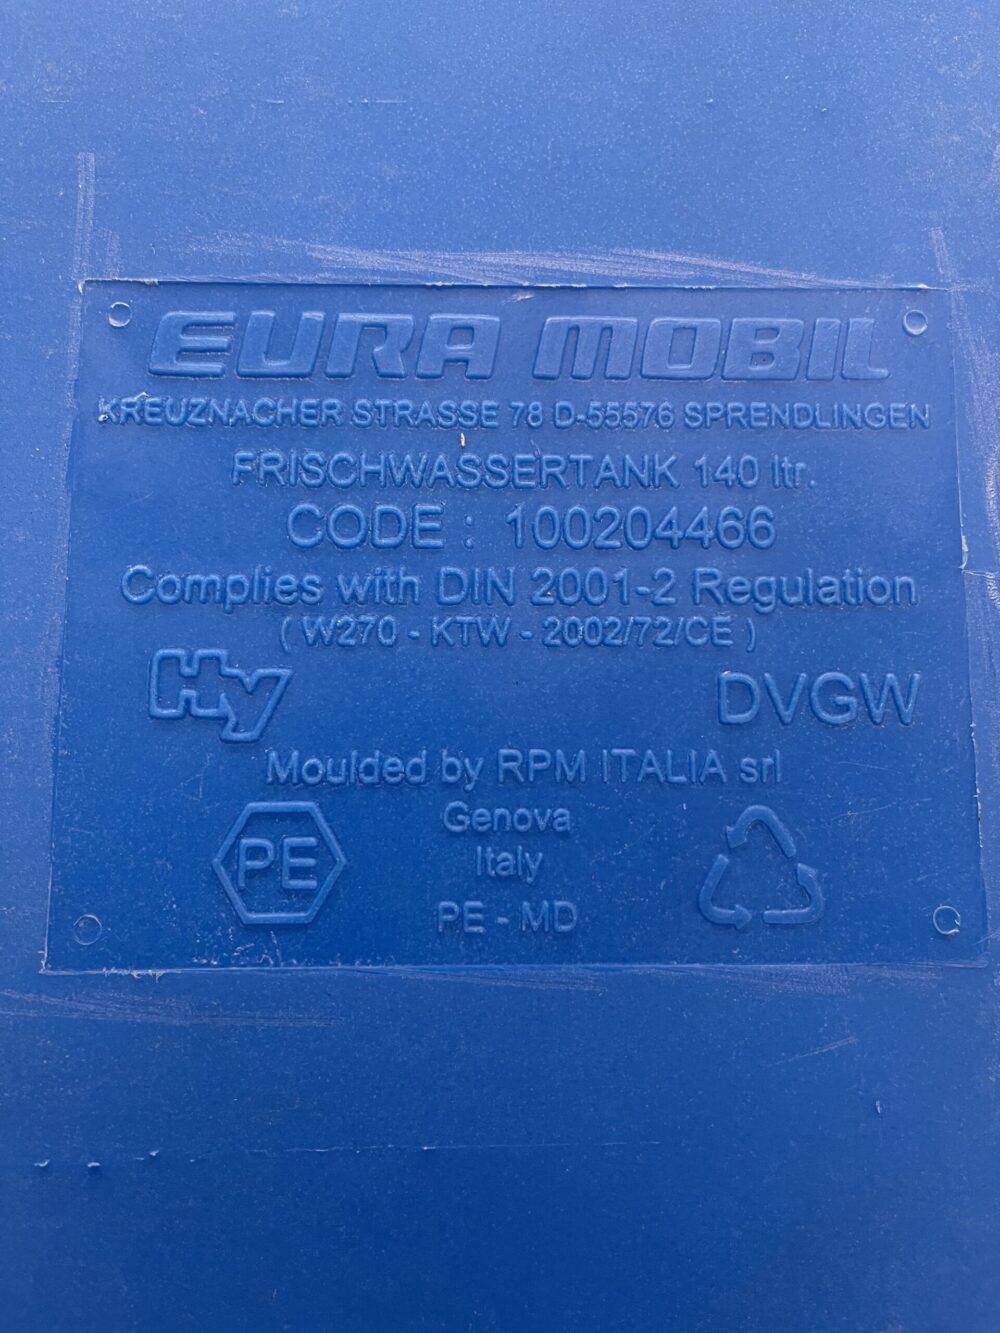 Eura Mobil Frischwassertank 140 Liter